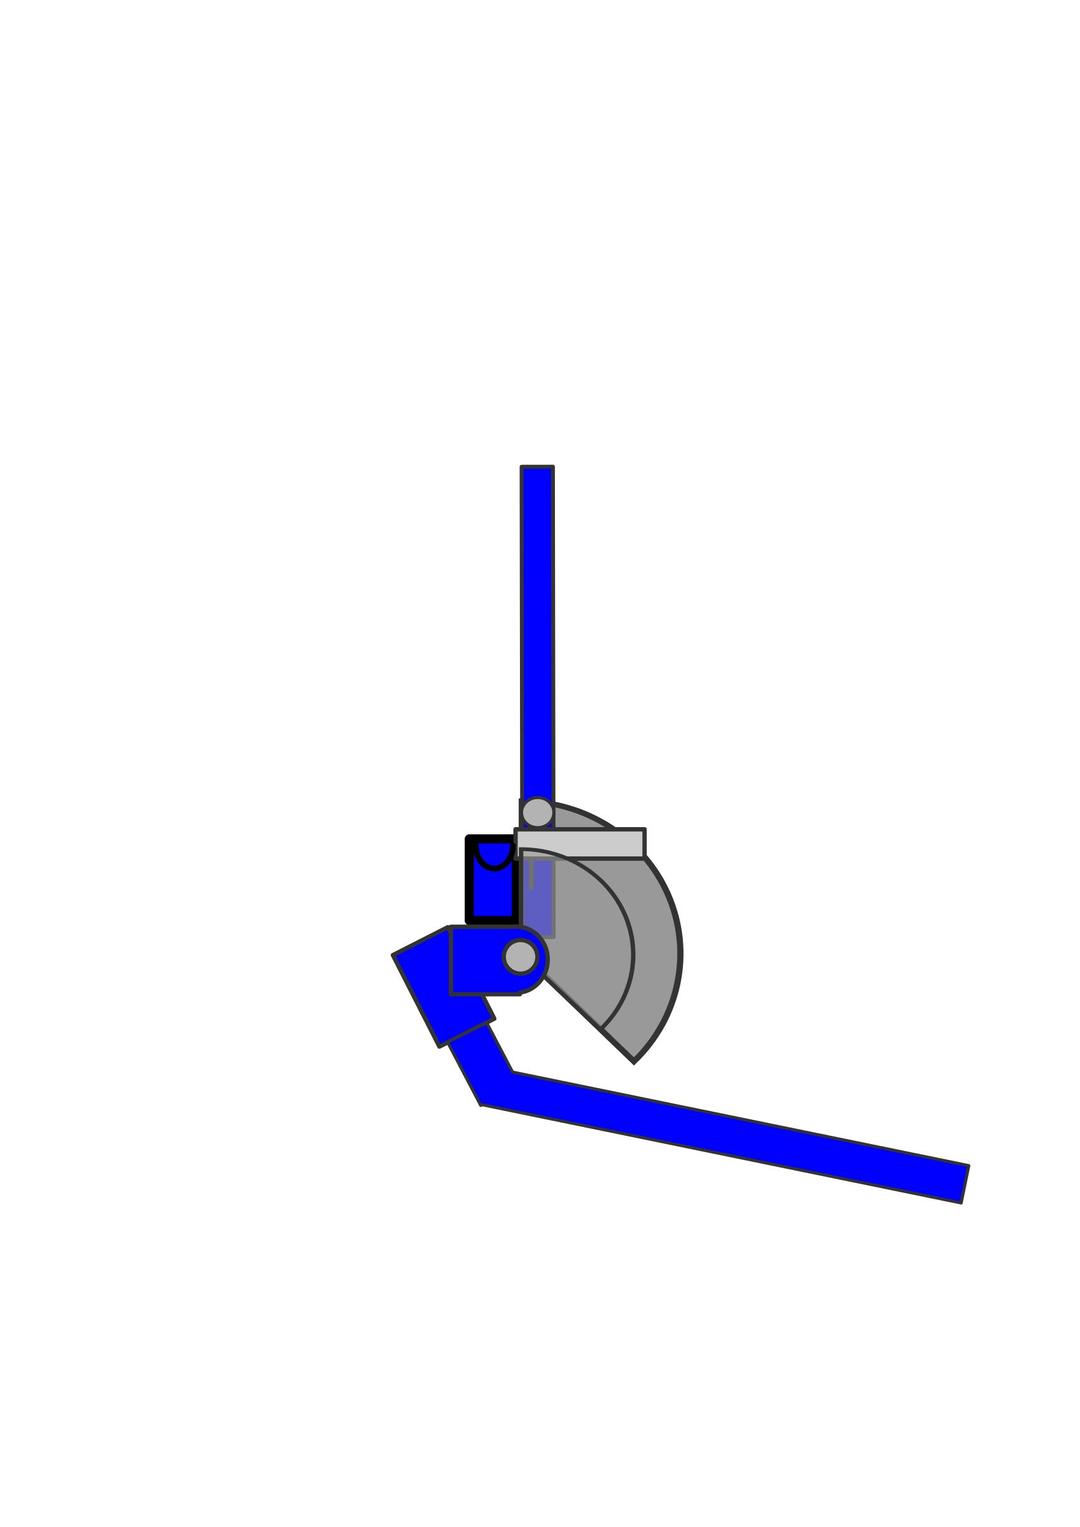 Plumbers Pipe Bending Machine png transparent